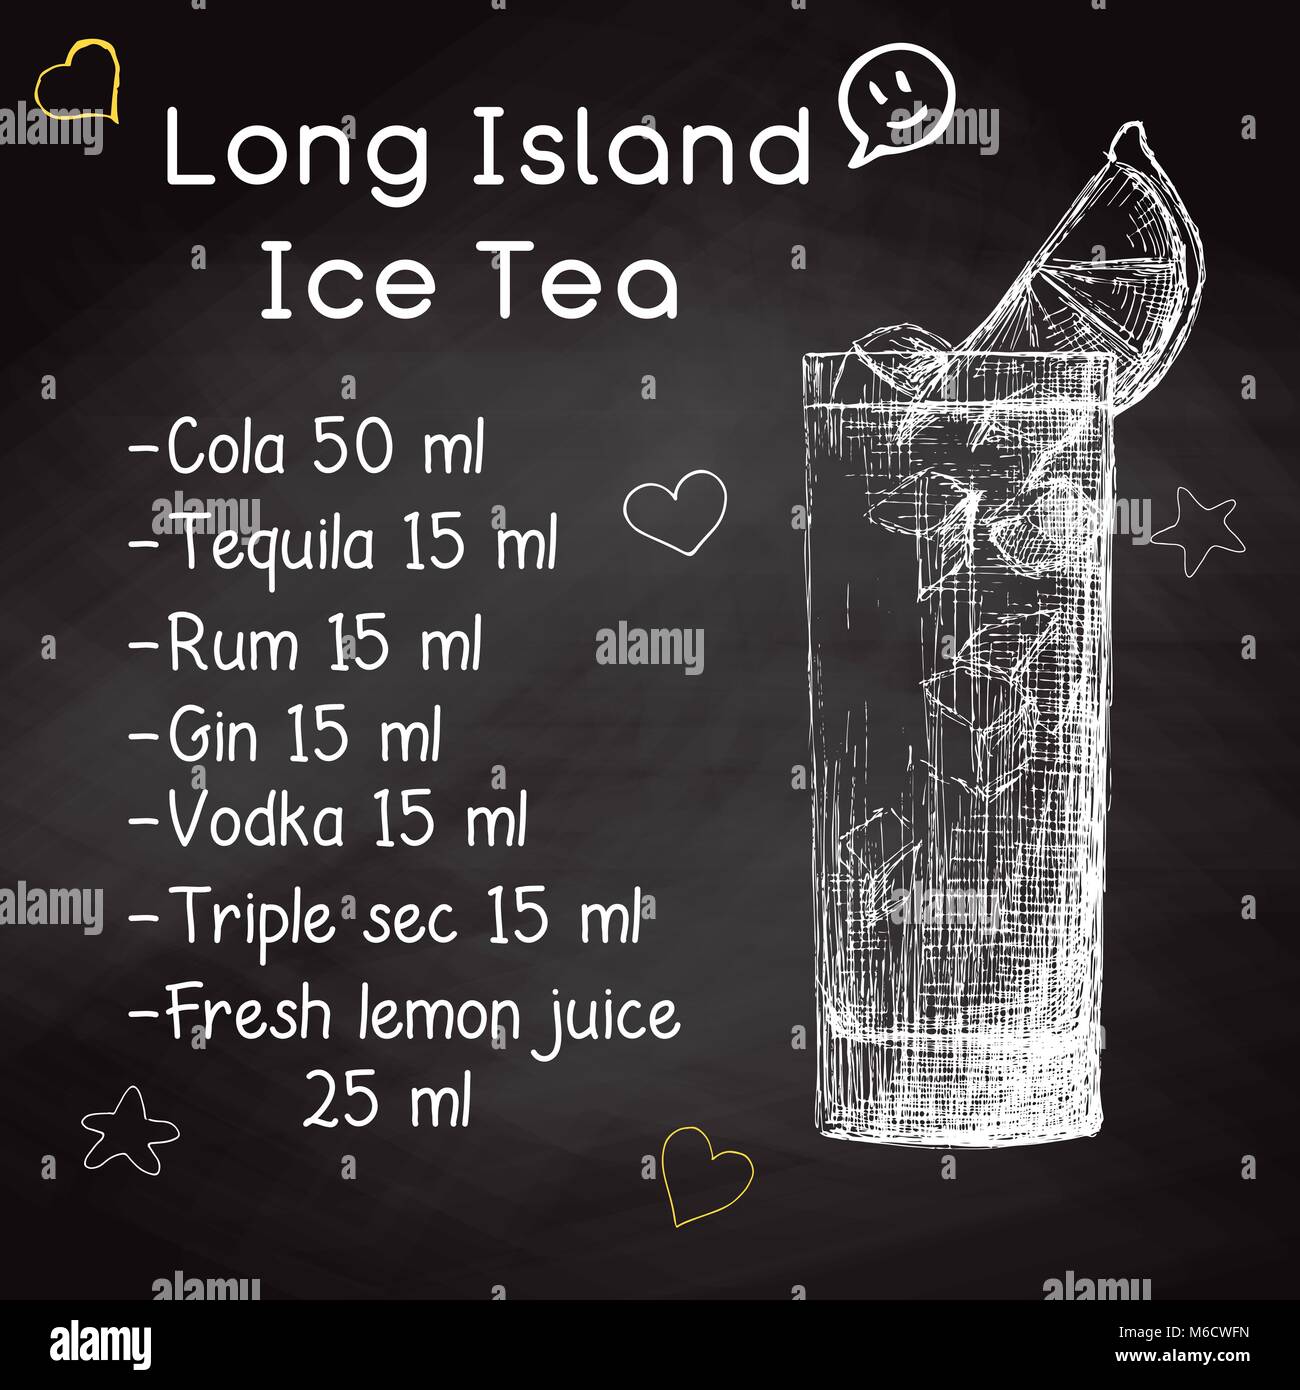 Einfaches Rezept für einen alkoholfreien Cocktail Long Island Ice Tea. Zeichnung Kreide auf einer Tafel. Vector Illustration einer Skizze Stil. Stock Vektor